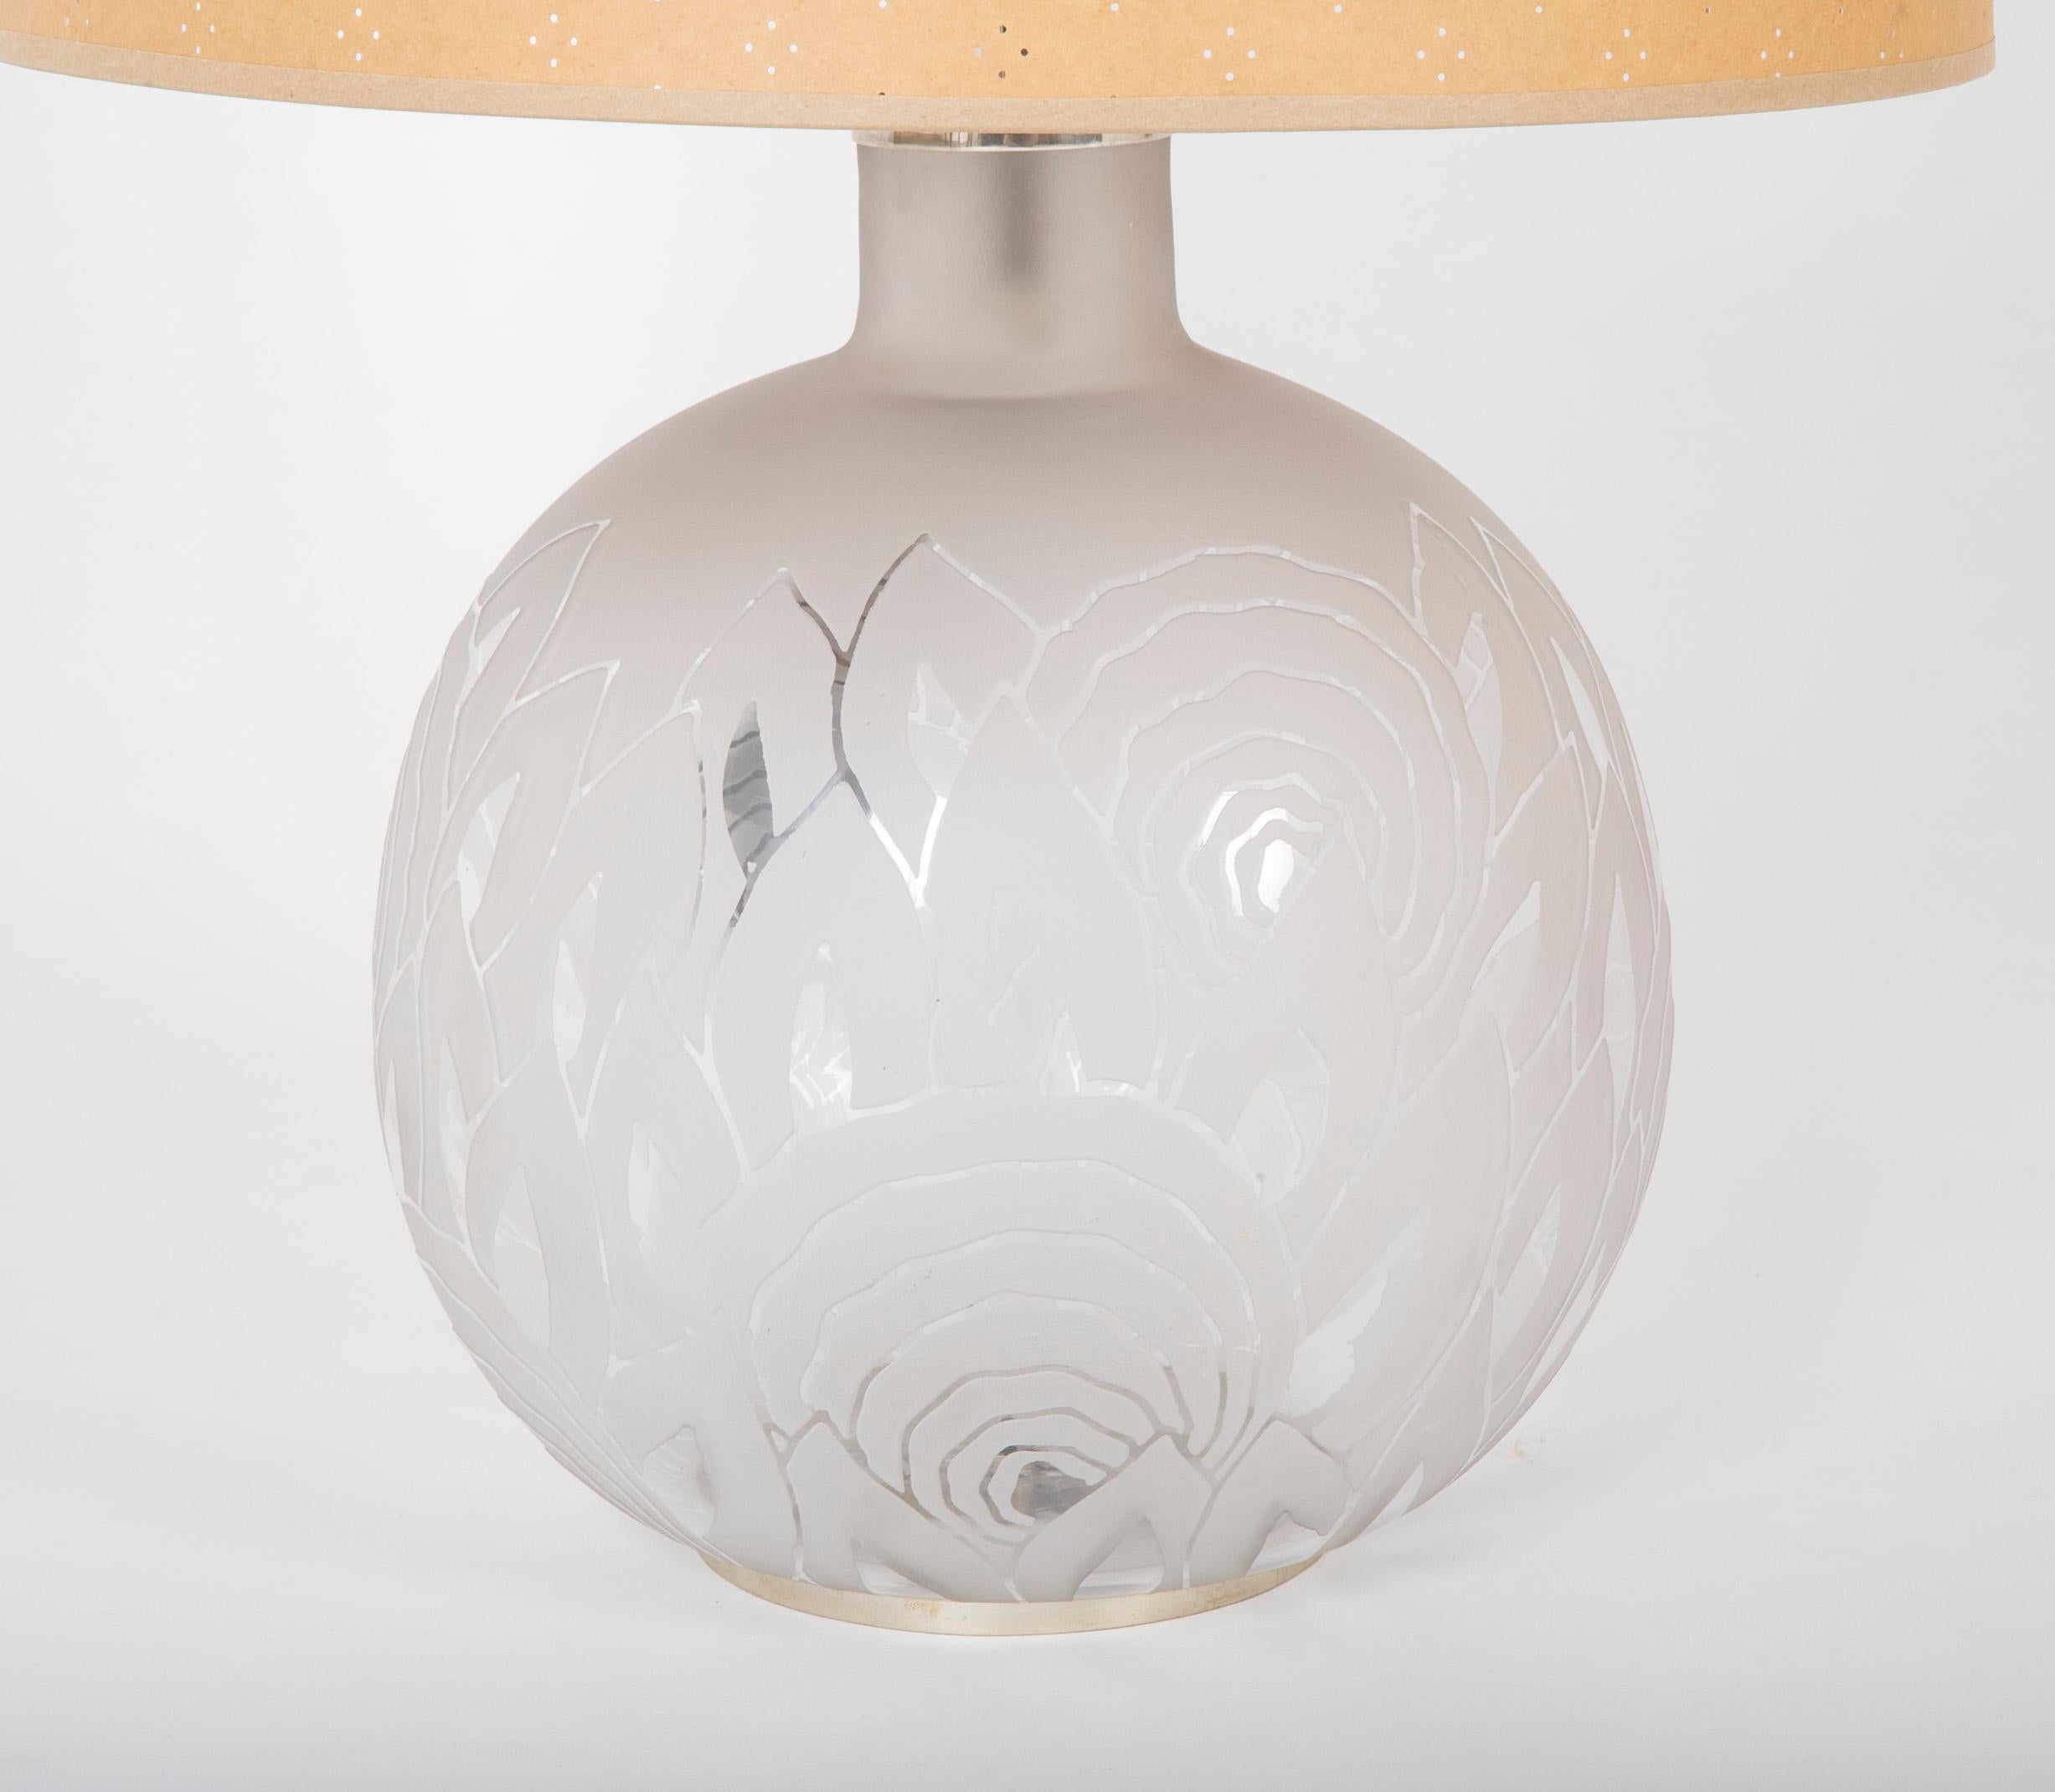 Eine abgenutzte Lampe aus säuregeätztem Glas mit vernickelten Halterungen von Jean Boris Lacroix ( Frankreich, 1902 - 1984 ). Die Liebe zum Detail setzt sich in der geätzten Signatur und der asymmetrischen Montage auf dem Sockel fort. Die Lampe ist